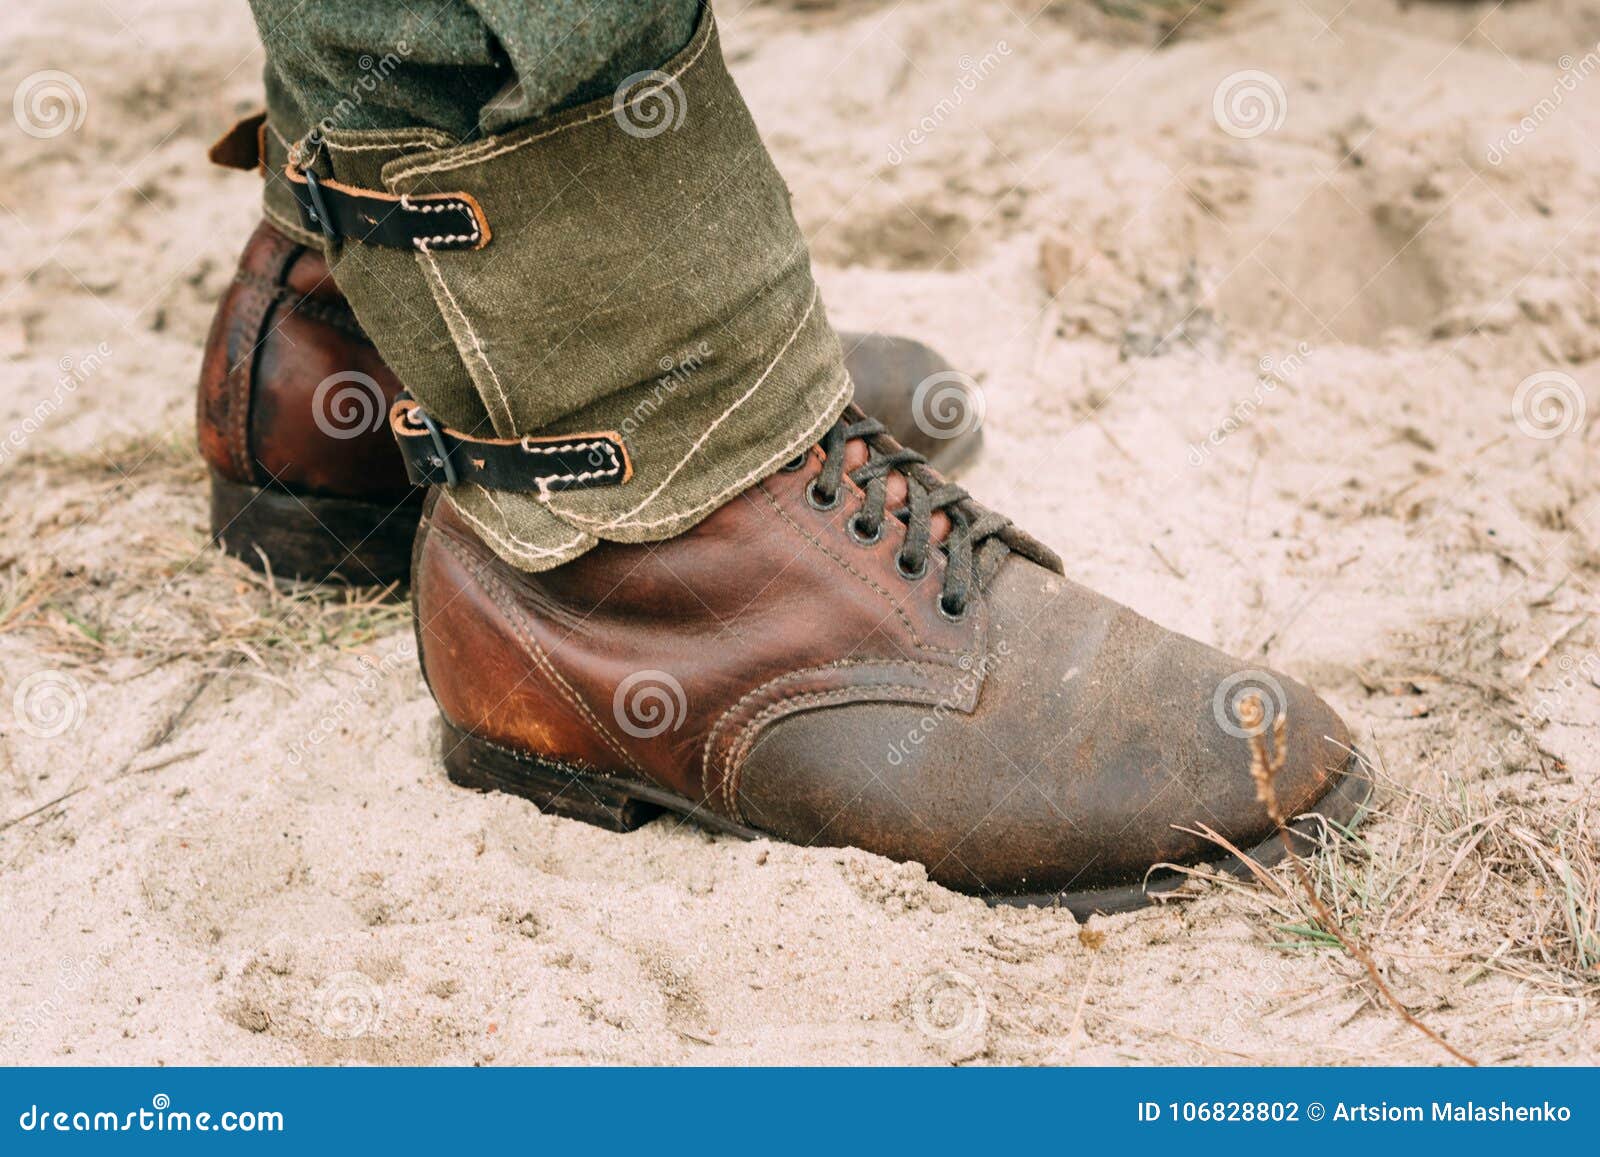 Γερμανικές στρατιωτικές μπότες Ο δεύτερος παγκόσμιος πόλεμος Στοκ Εικόνες -  εικόνα από battlement, arno: 106828802